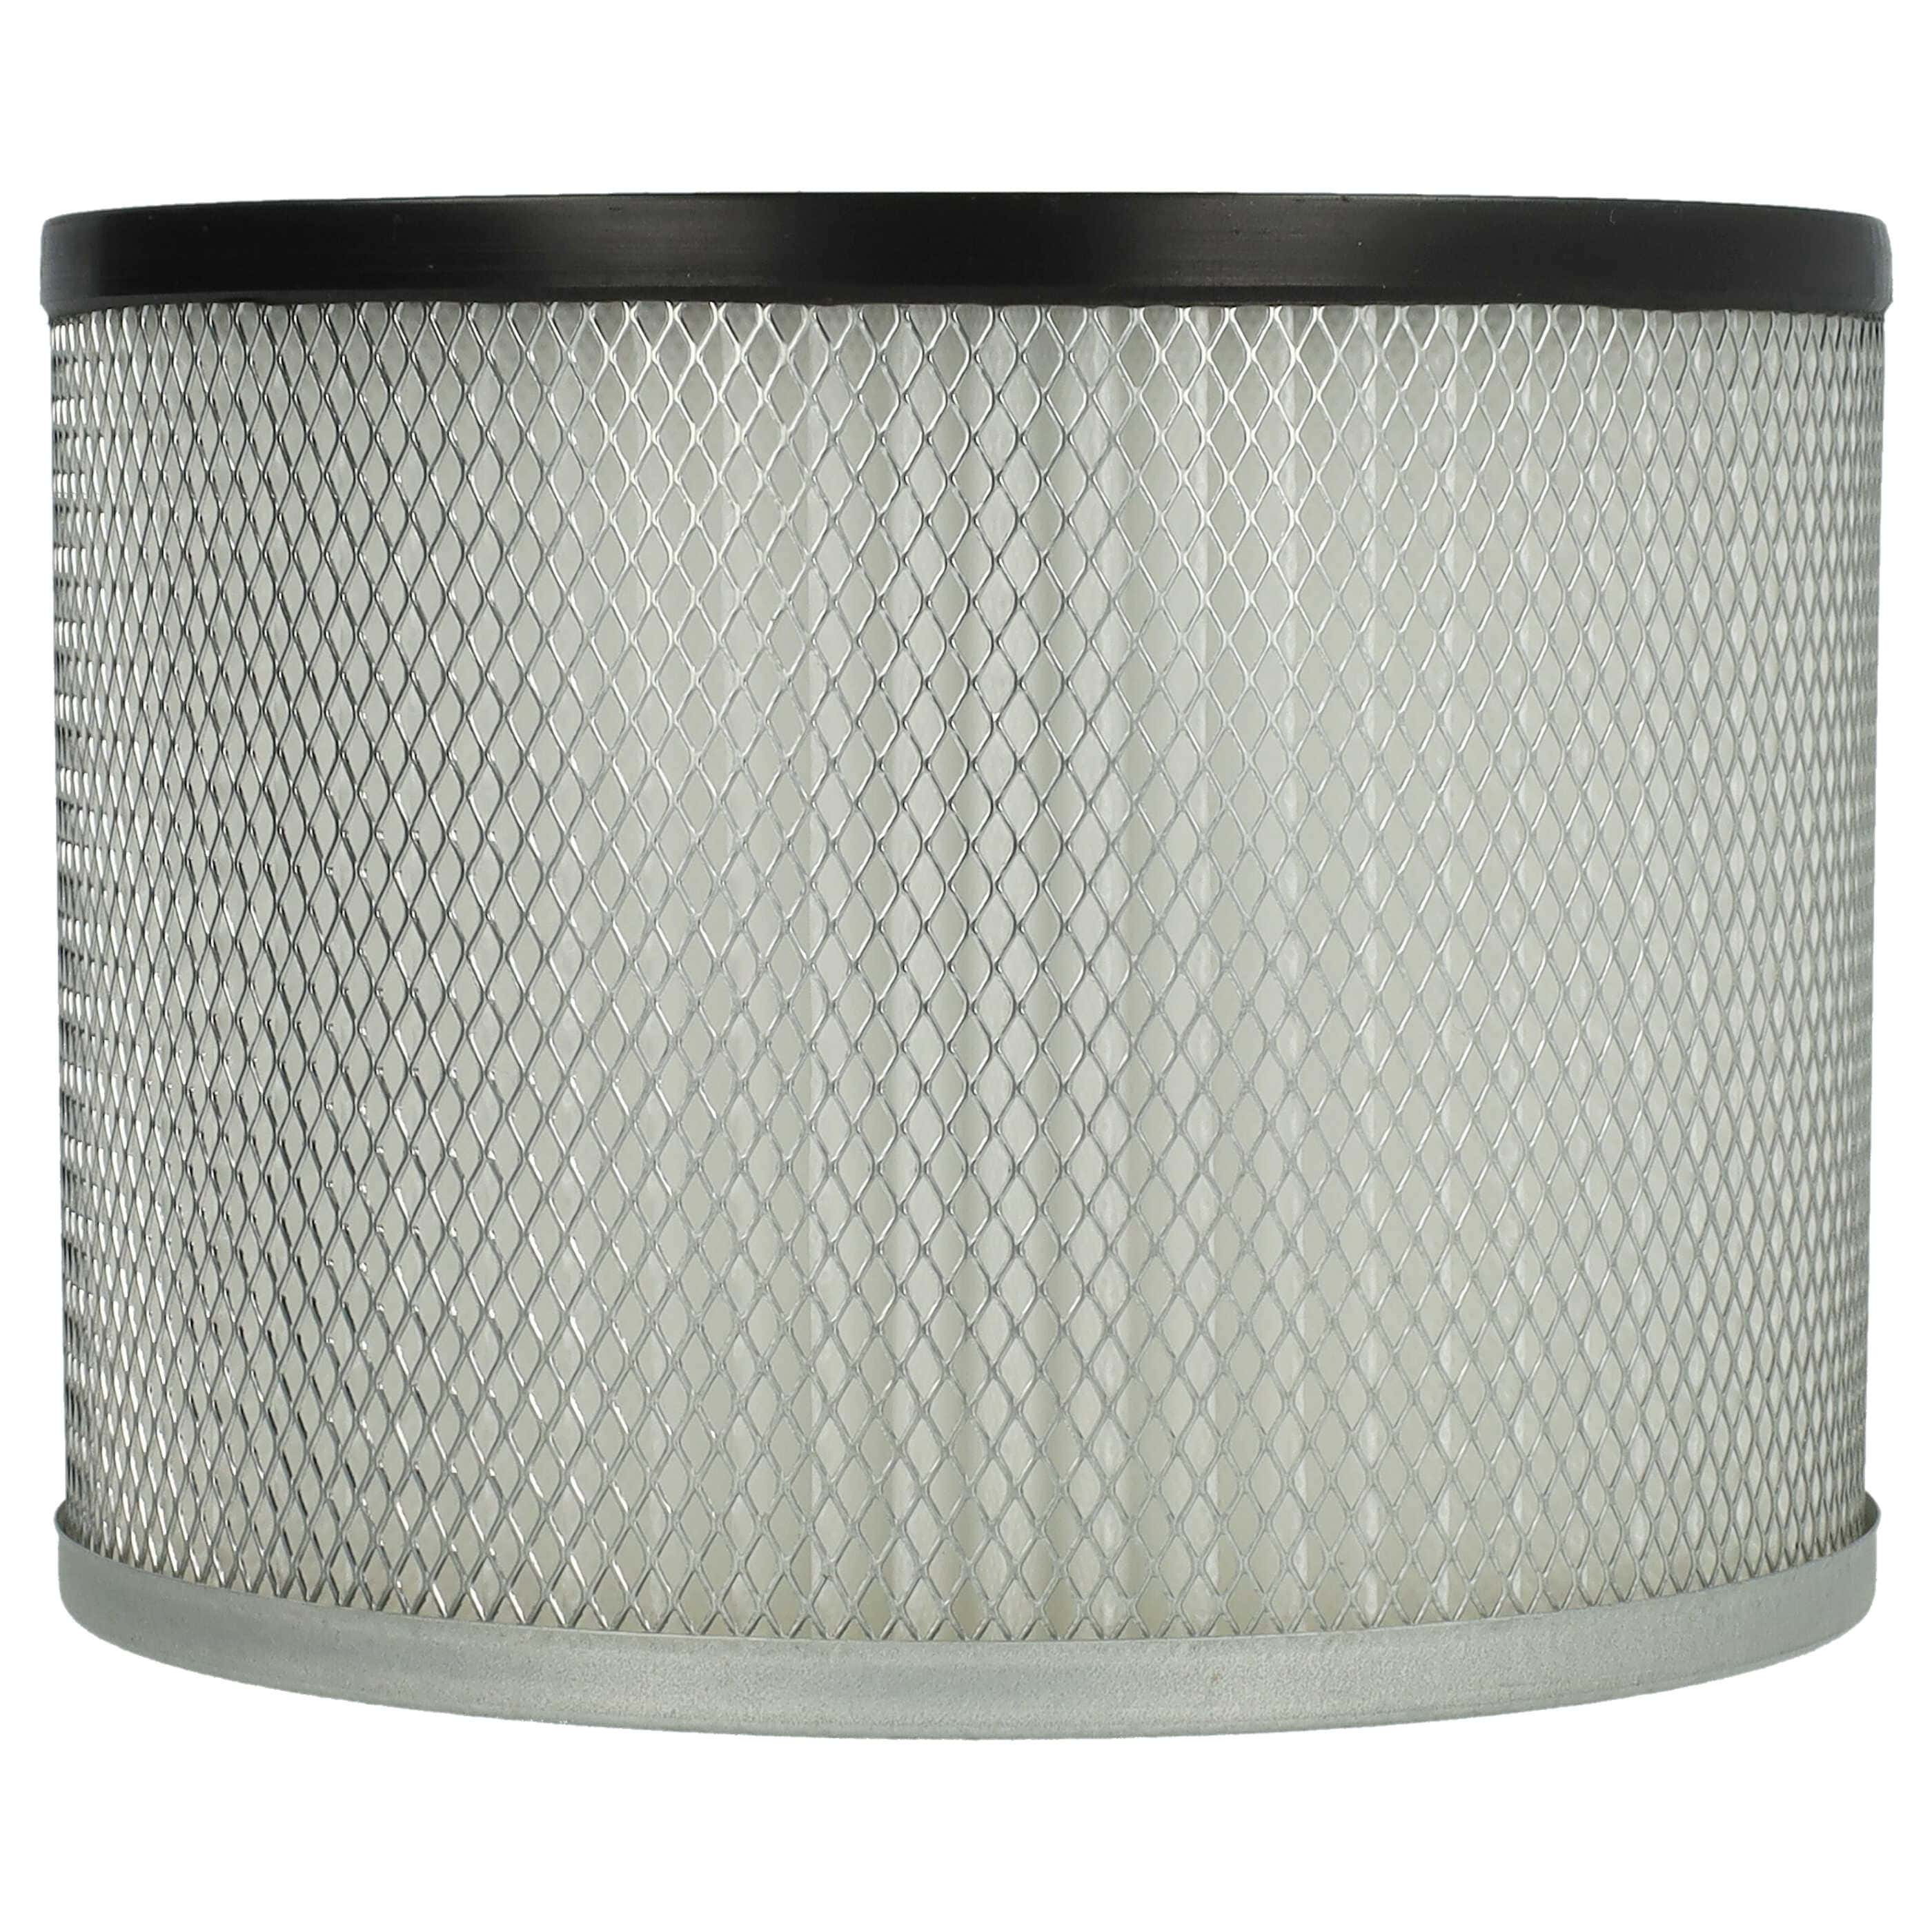 Filtro reemplaza ROWI 212010019 para aspiradora chimeneas filtro plisado, blanco / plata